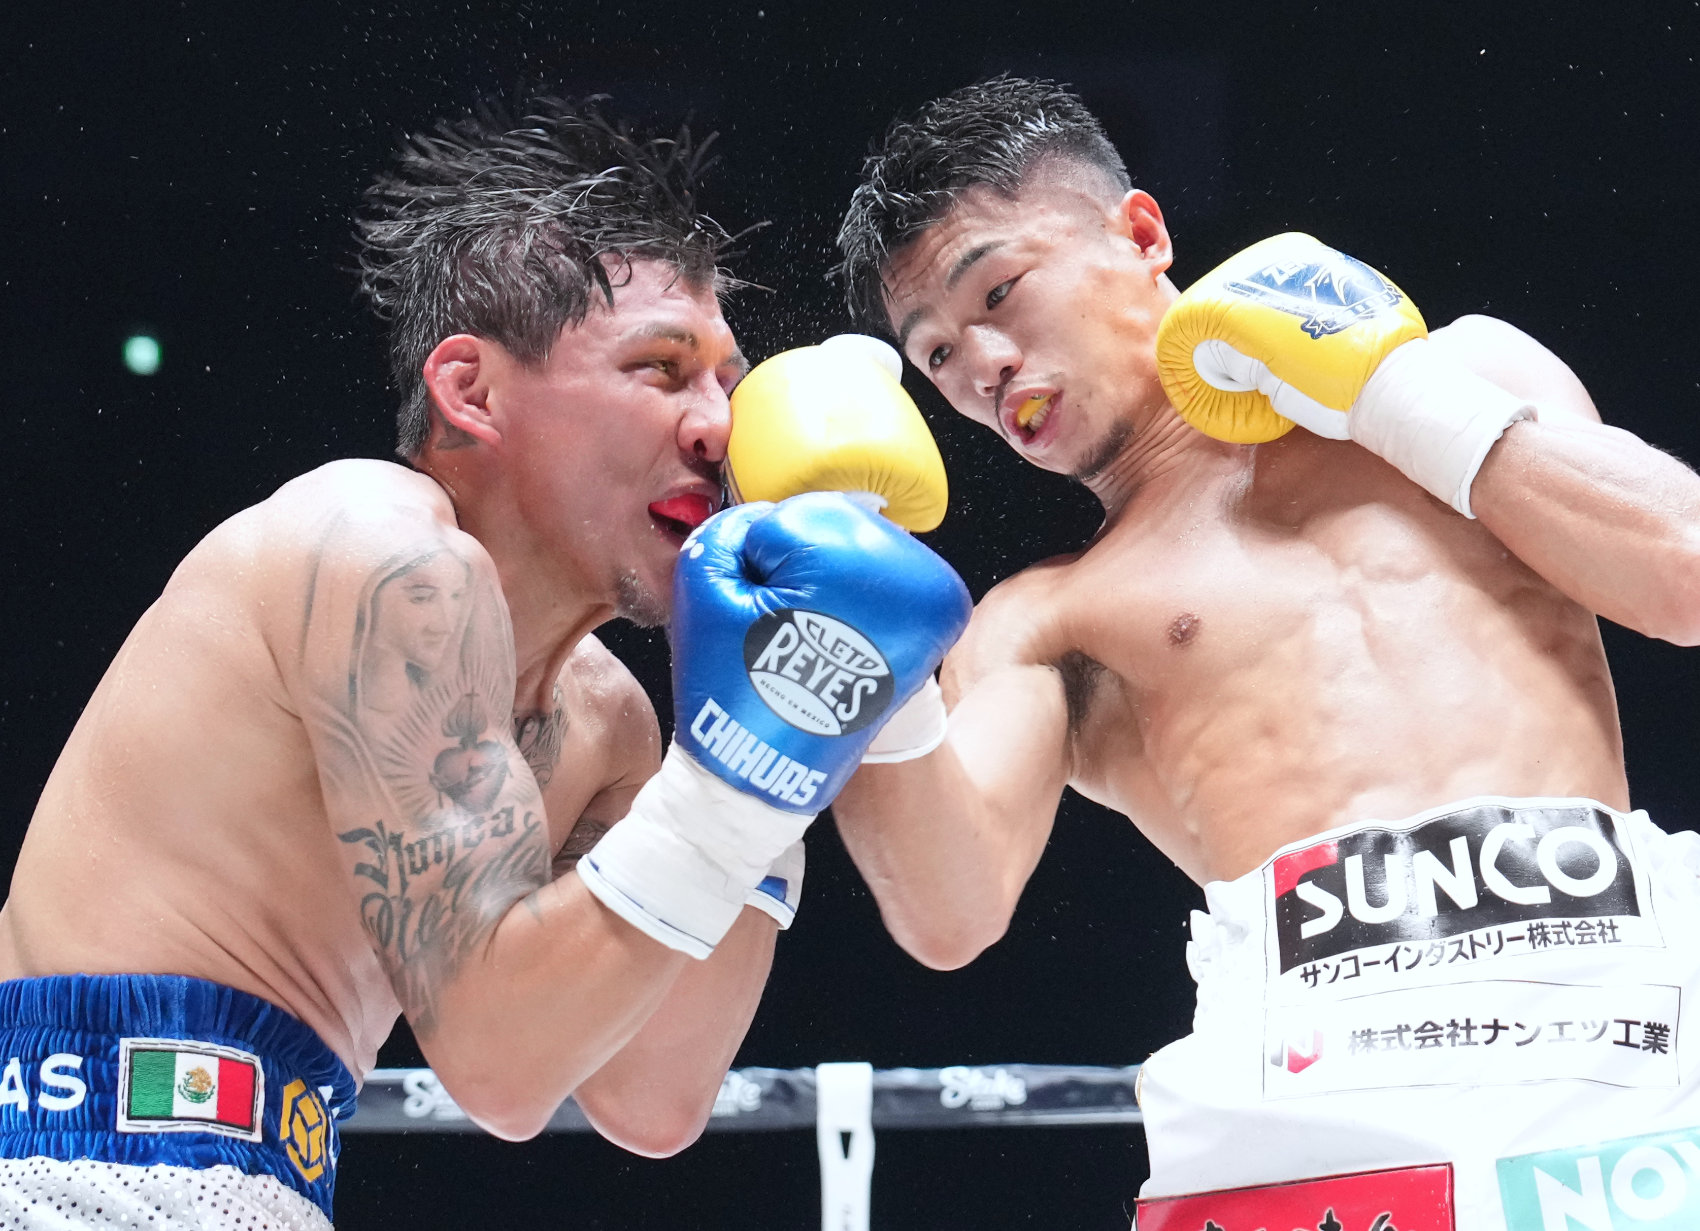 Junto Nakatani (right) won his 115-pound debut but Francisco Rodriguez Jr. made him earn it. Photo by Naoki Fukuda